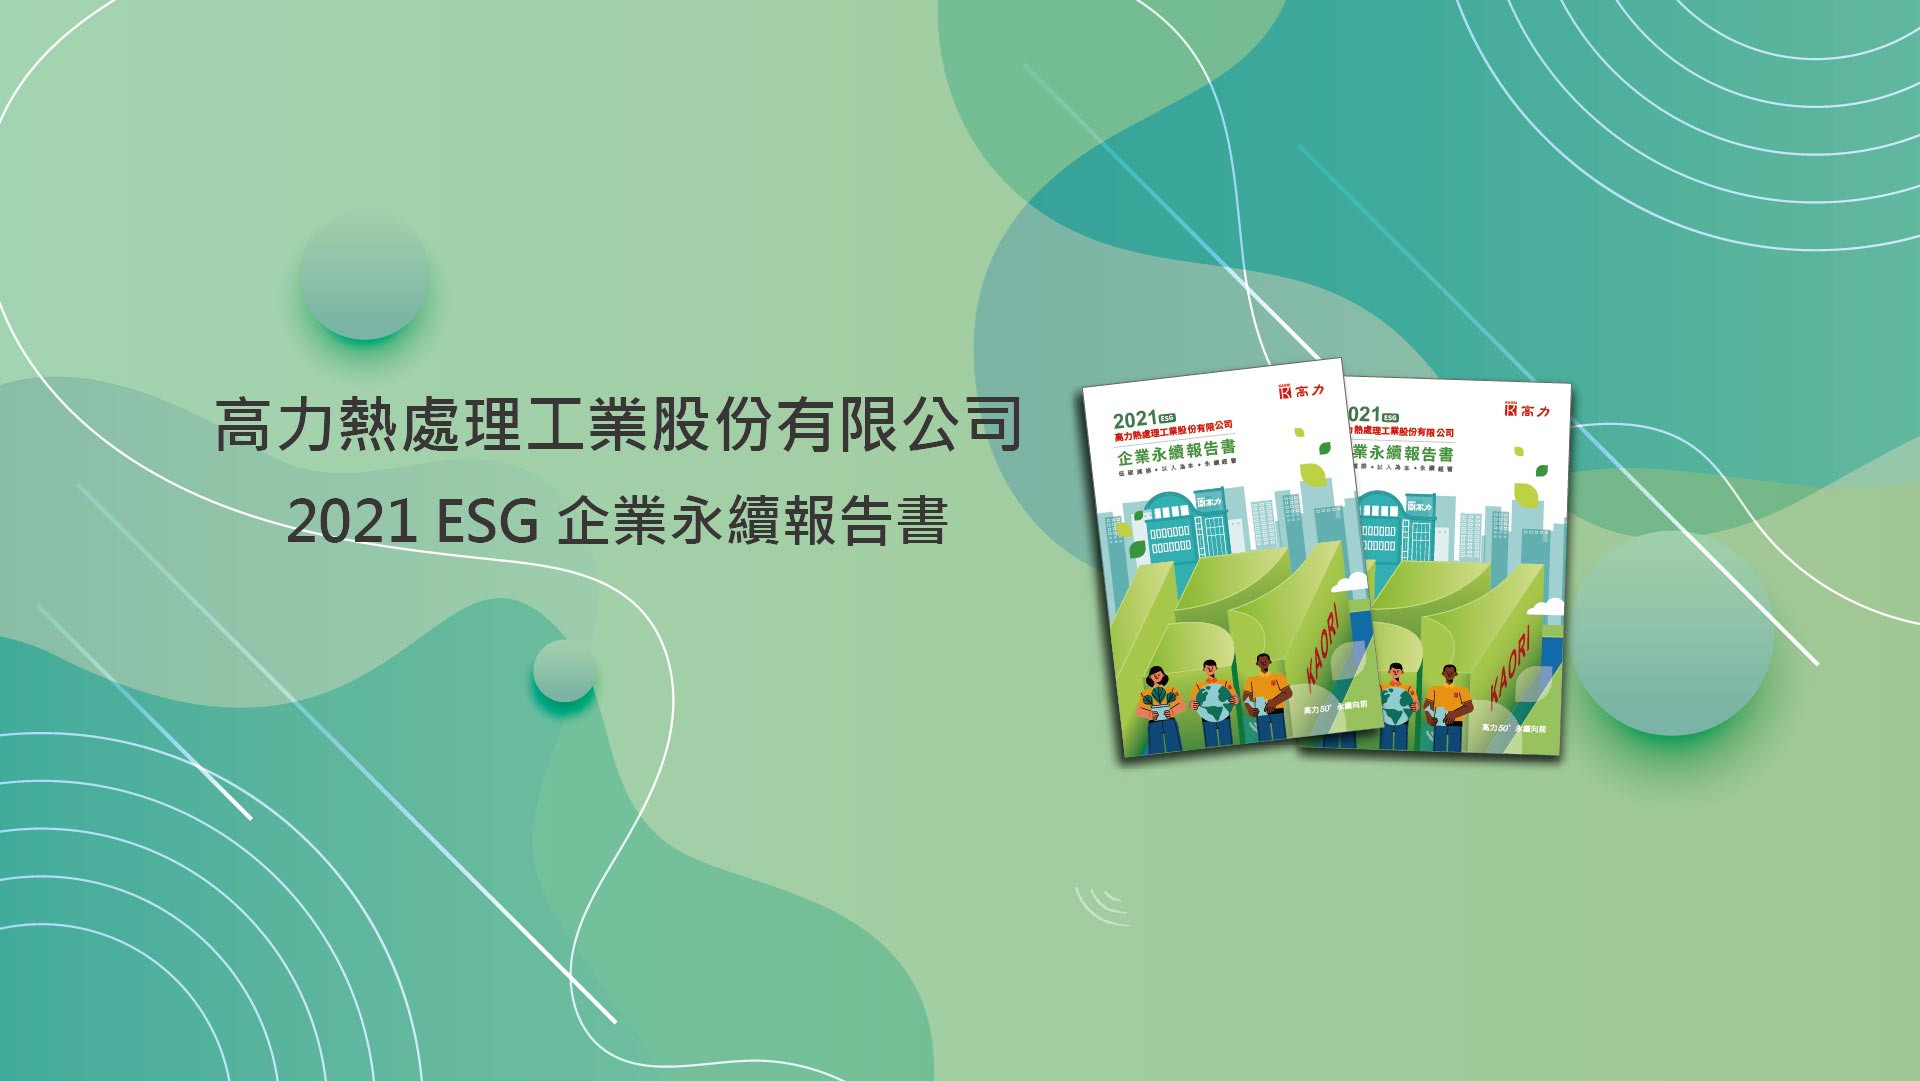  跟上ESG永續浪潮 高力今年首發企業永續報告書 